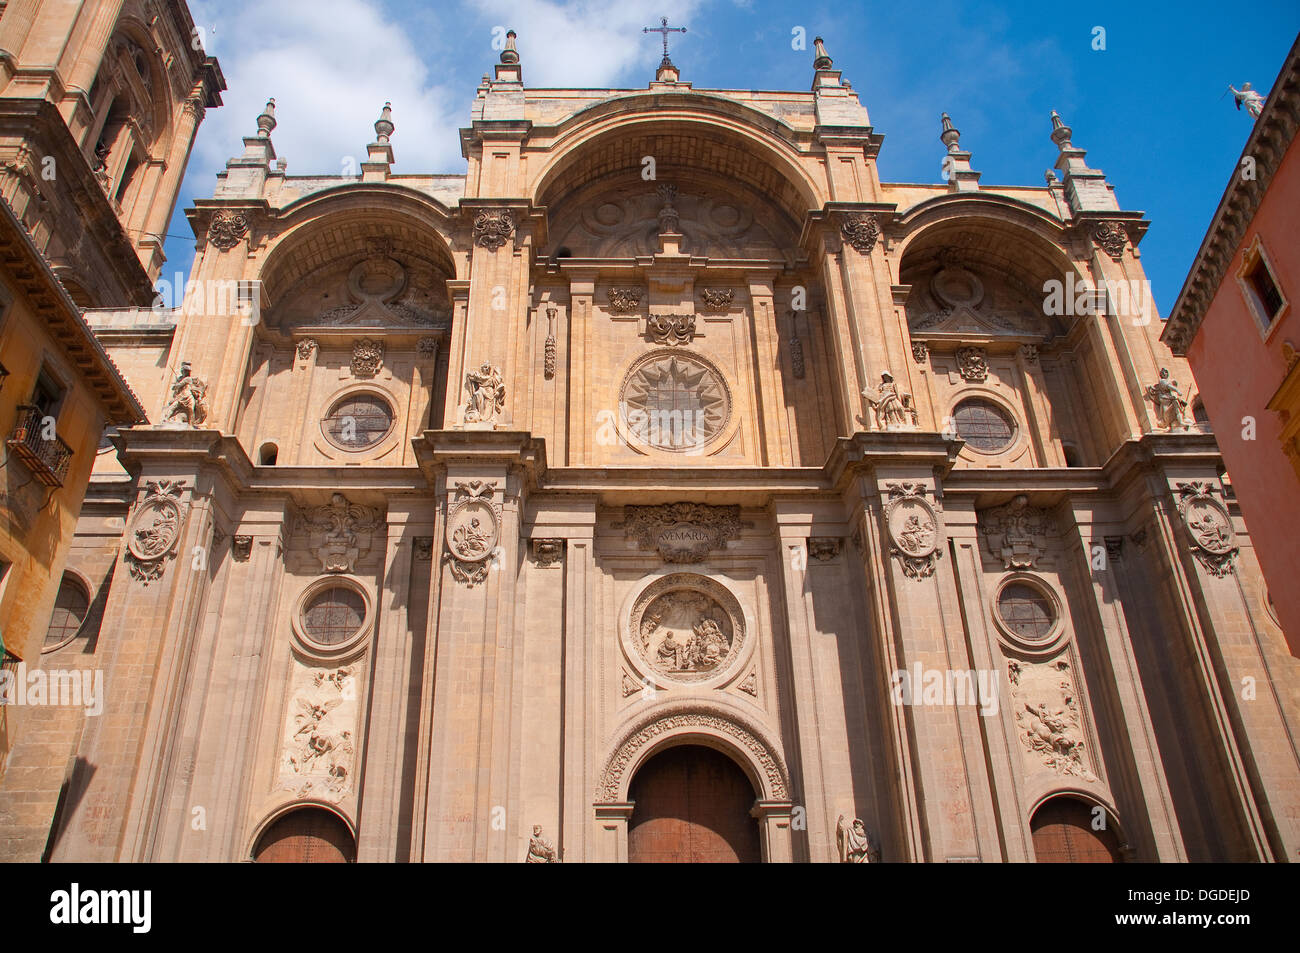 Principal Facade of Metropolitana de la Encarnación Cathedral in Granada (Cathedral of the Incarnation). Spain Stock Photo